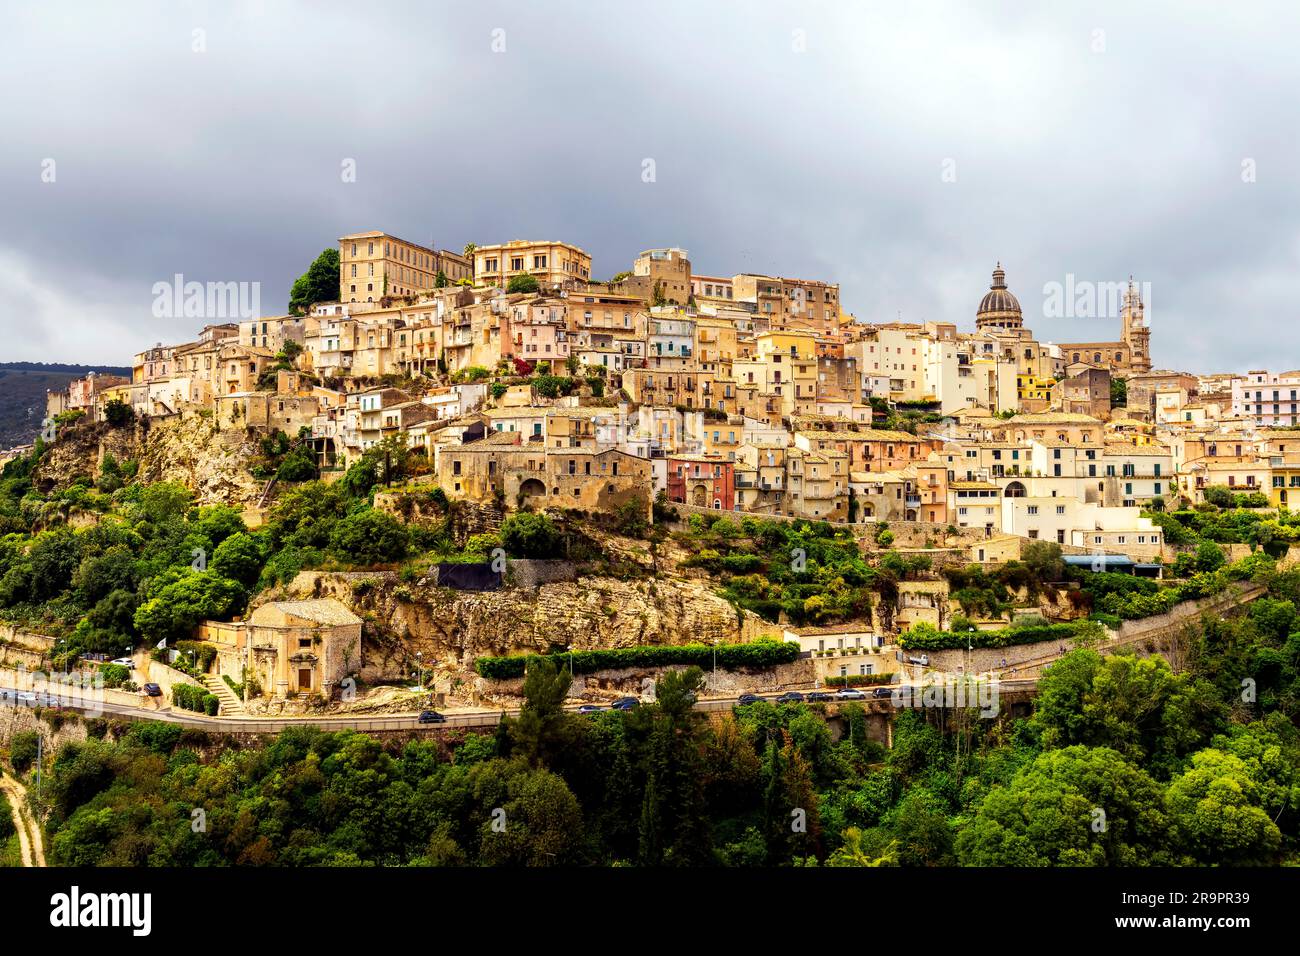 Vue à couper le souffle sur la colline Ragusa, Sicile, Italie. t est la capitale de la province de Ragusa, sur l'île de Sicile. Banque D'Images